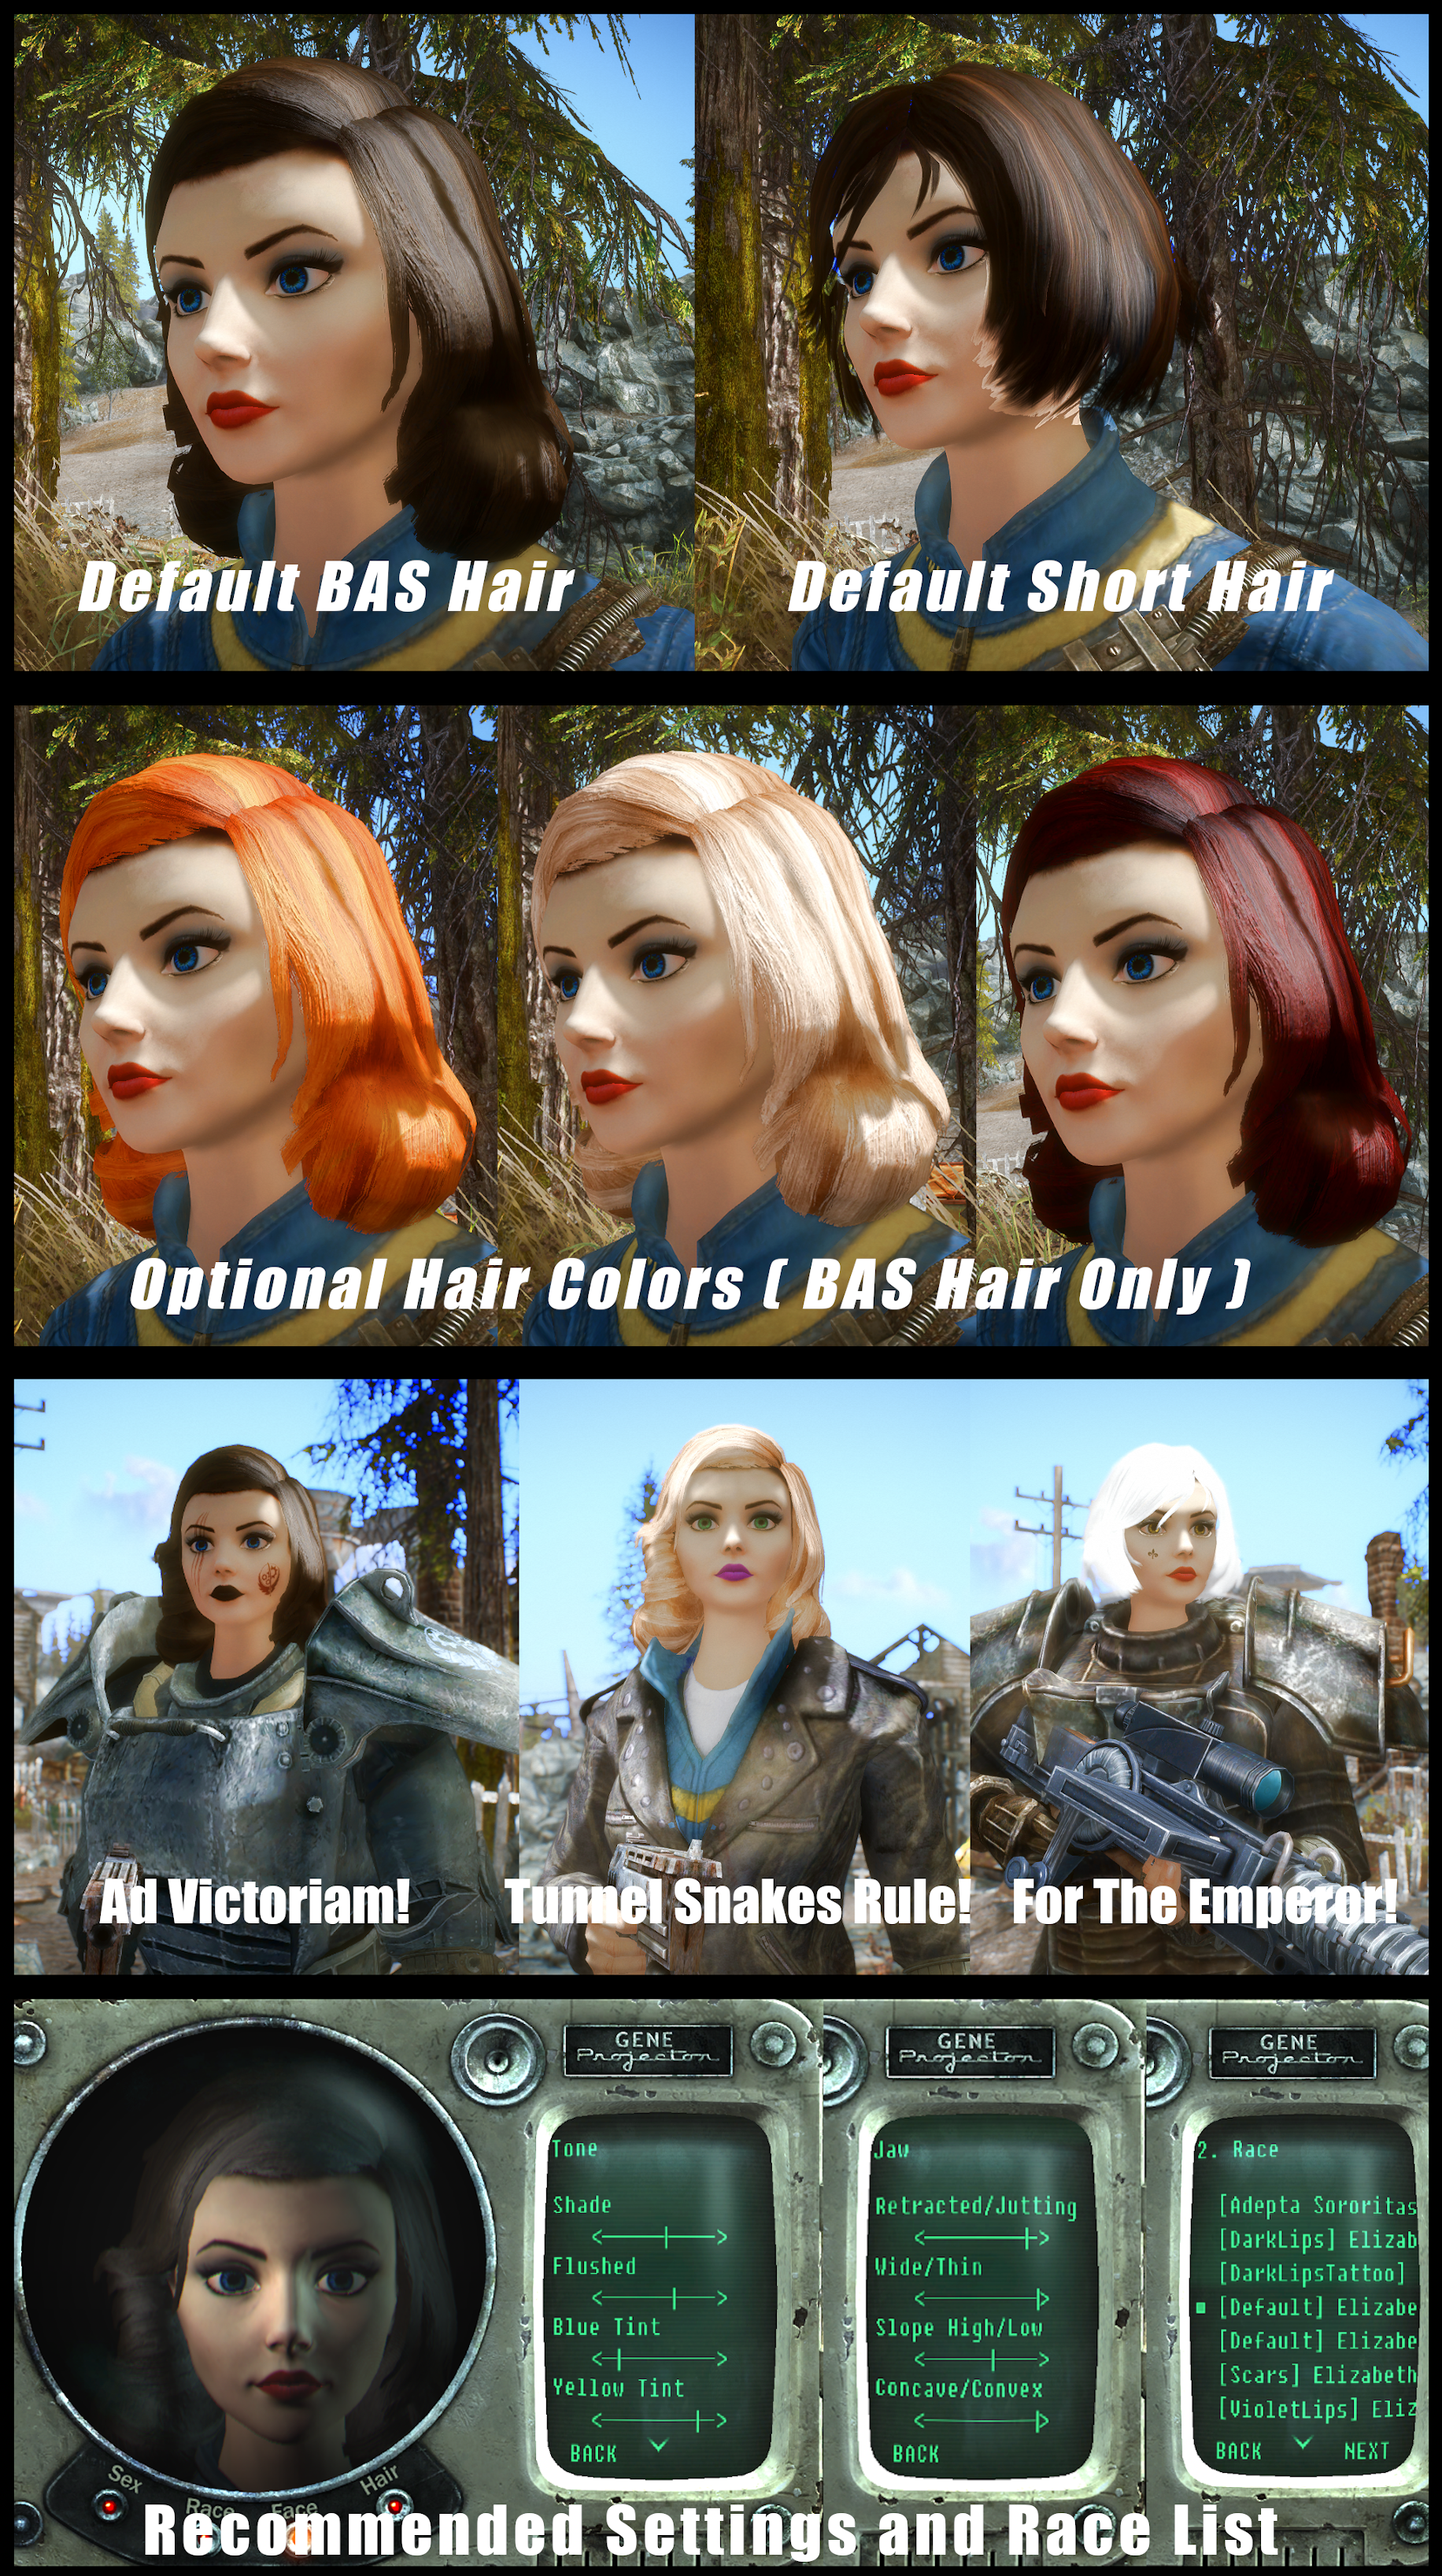 the main characters image - Bioshock Infinite - ModDB